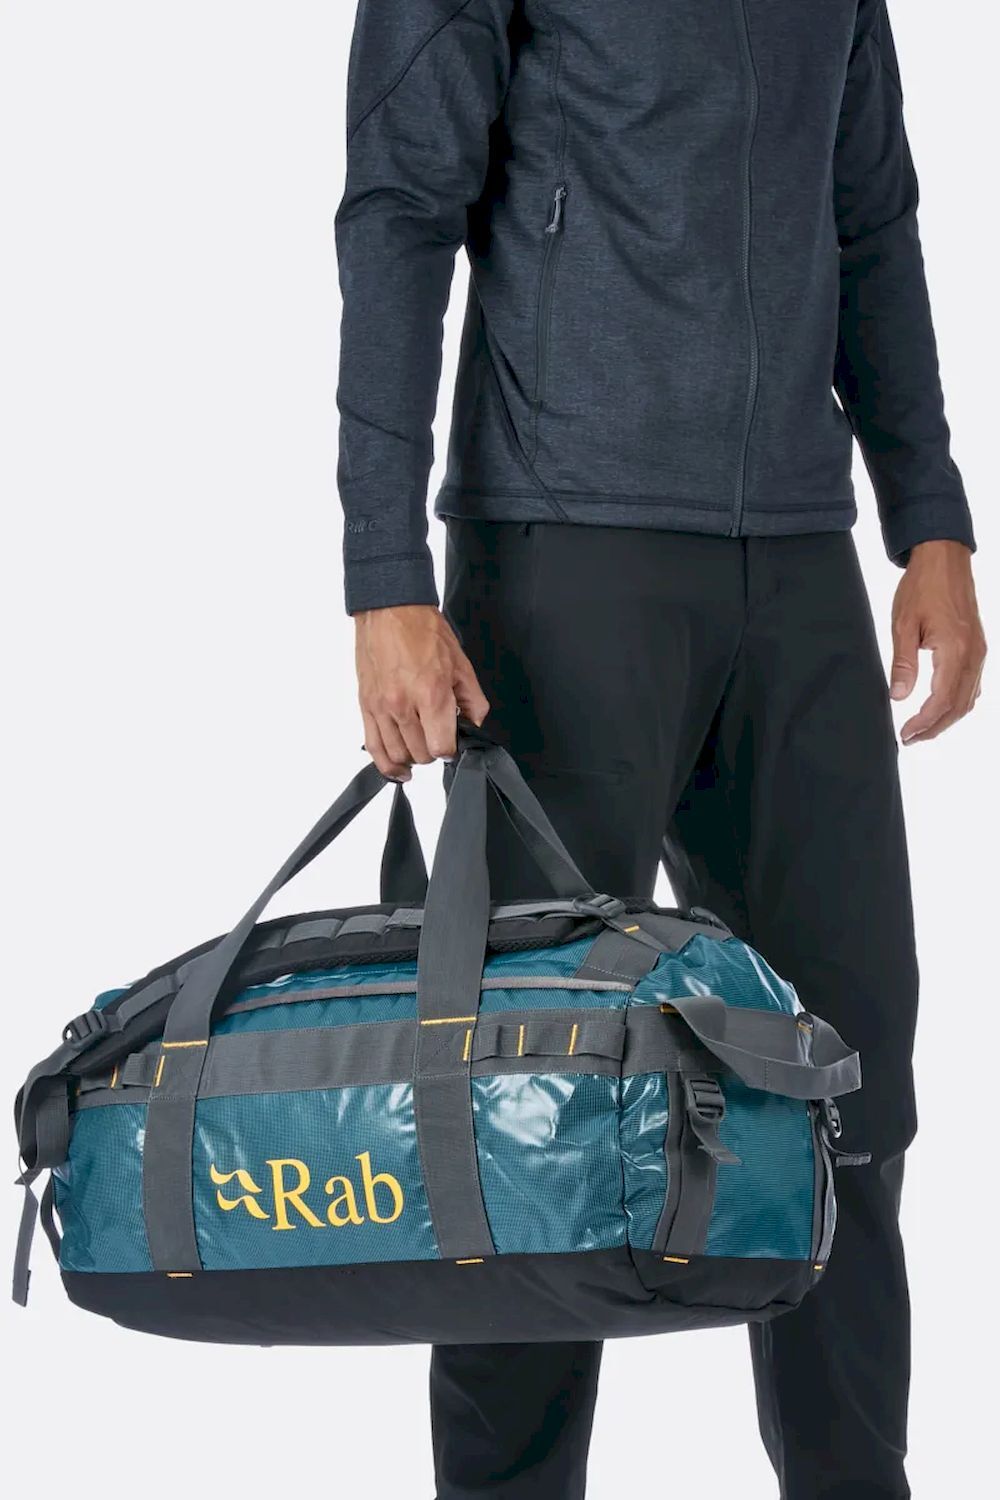 Rab Expedition Kitbag 50 - Reiserucksack - Herren